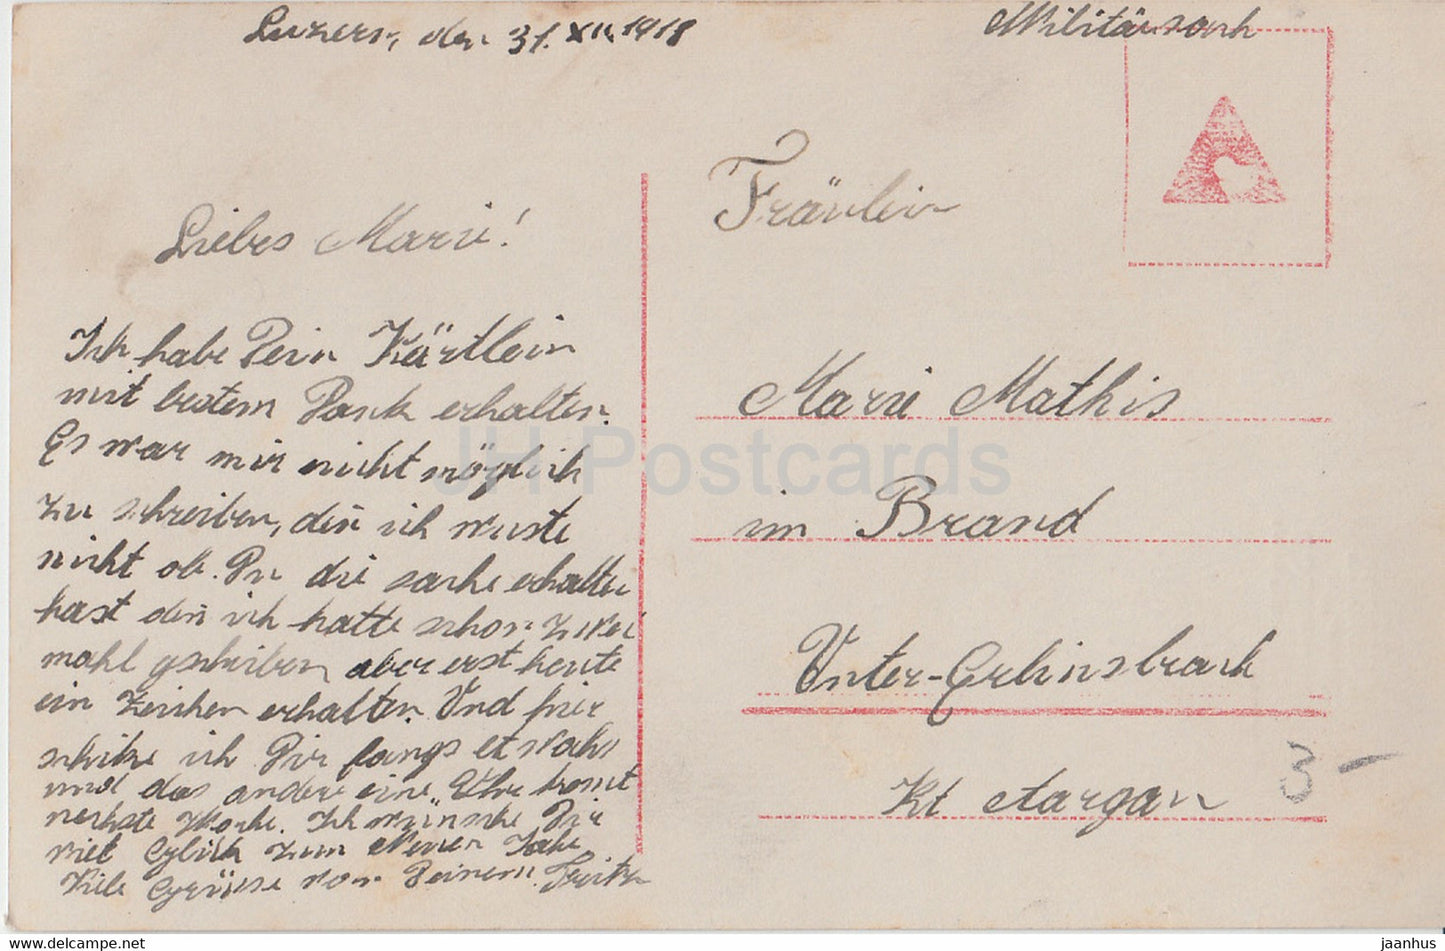 Carte de vœux du Nouvel An - Die Besten Neujahrsgrusse - couple - Amag 61958/3 - carte postale ancienne - 1918 - Allemagne - utilisé